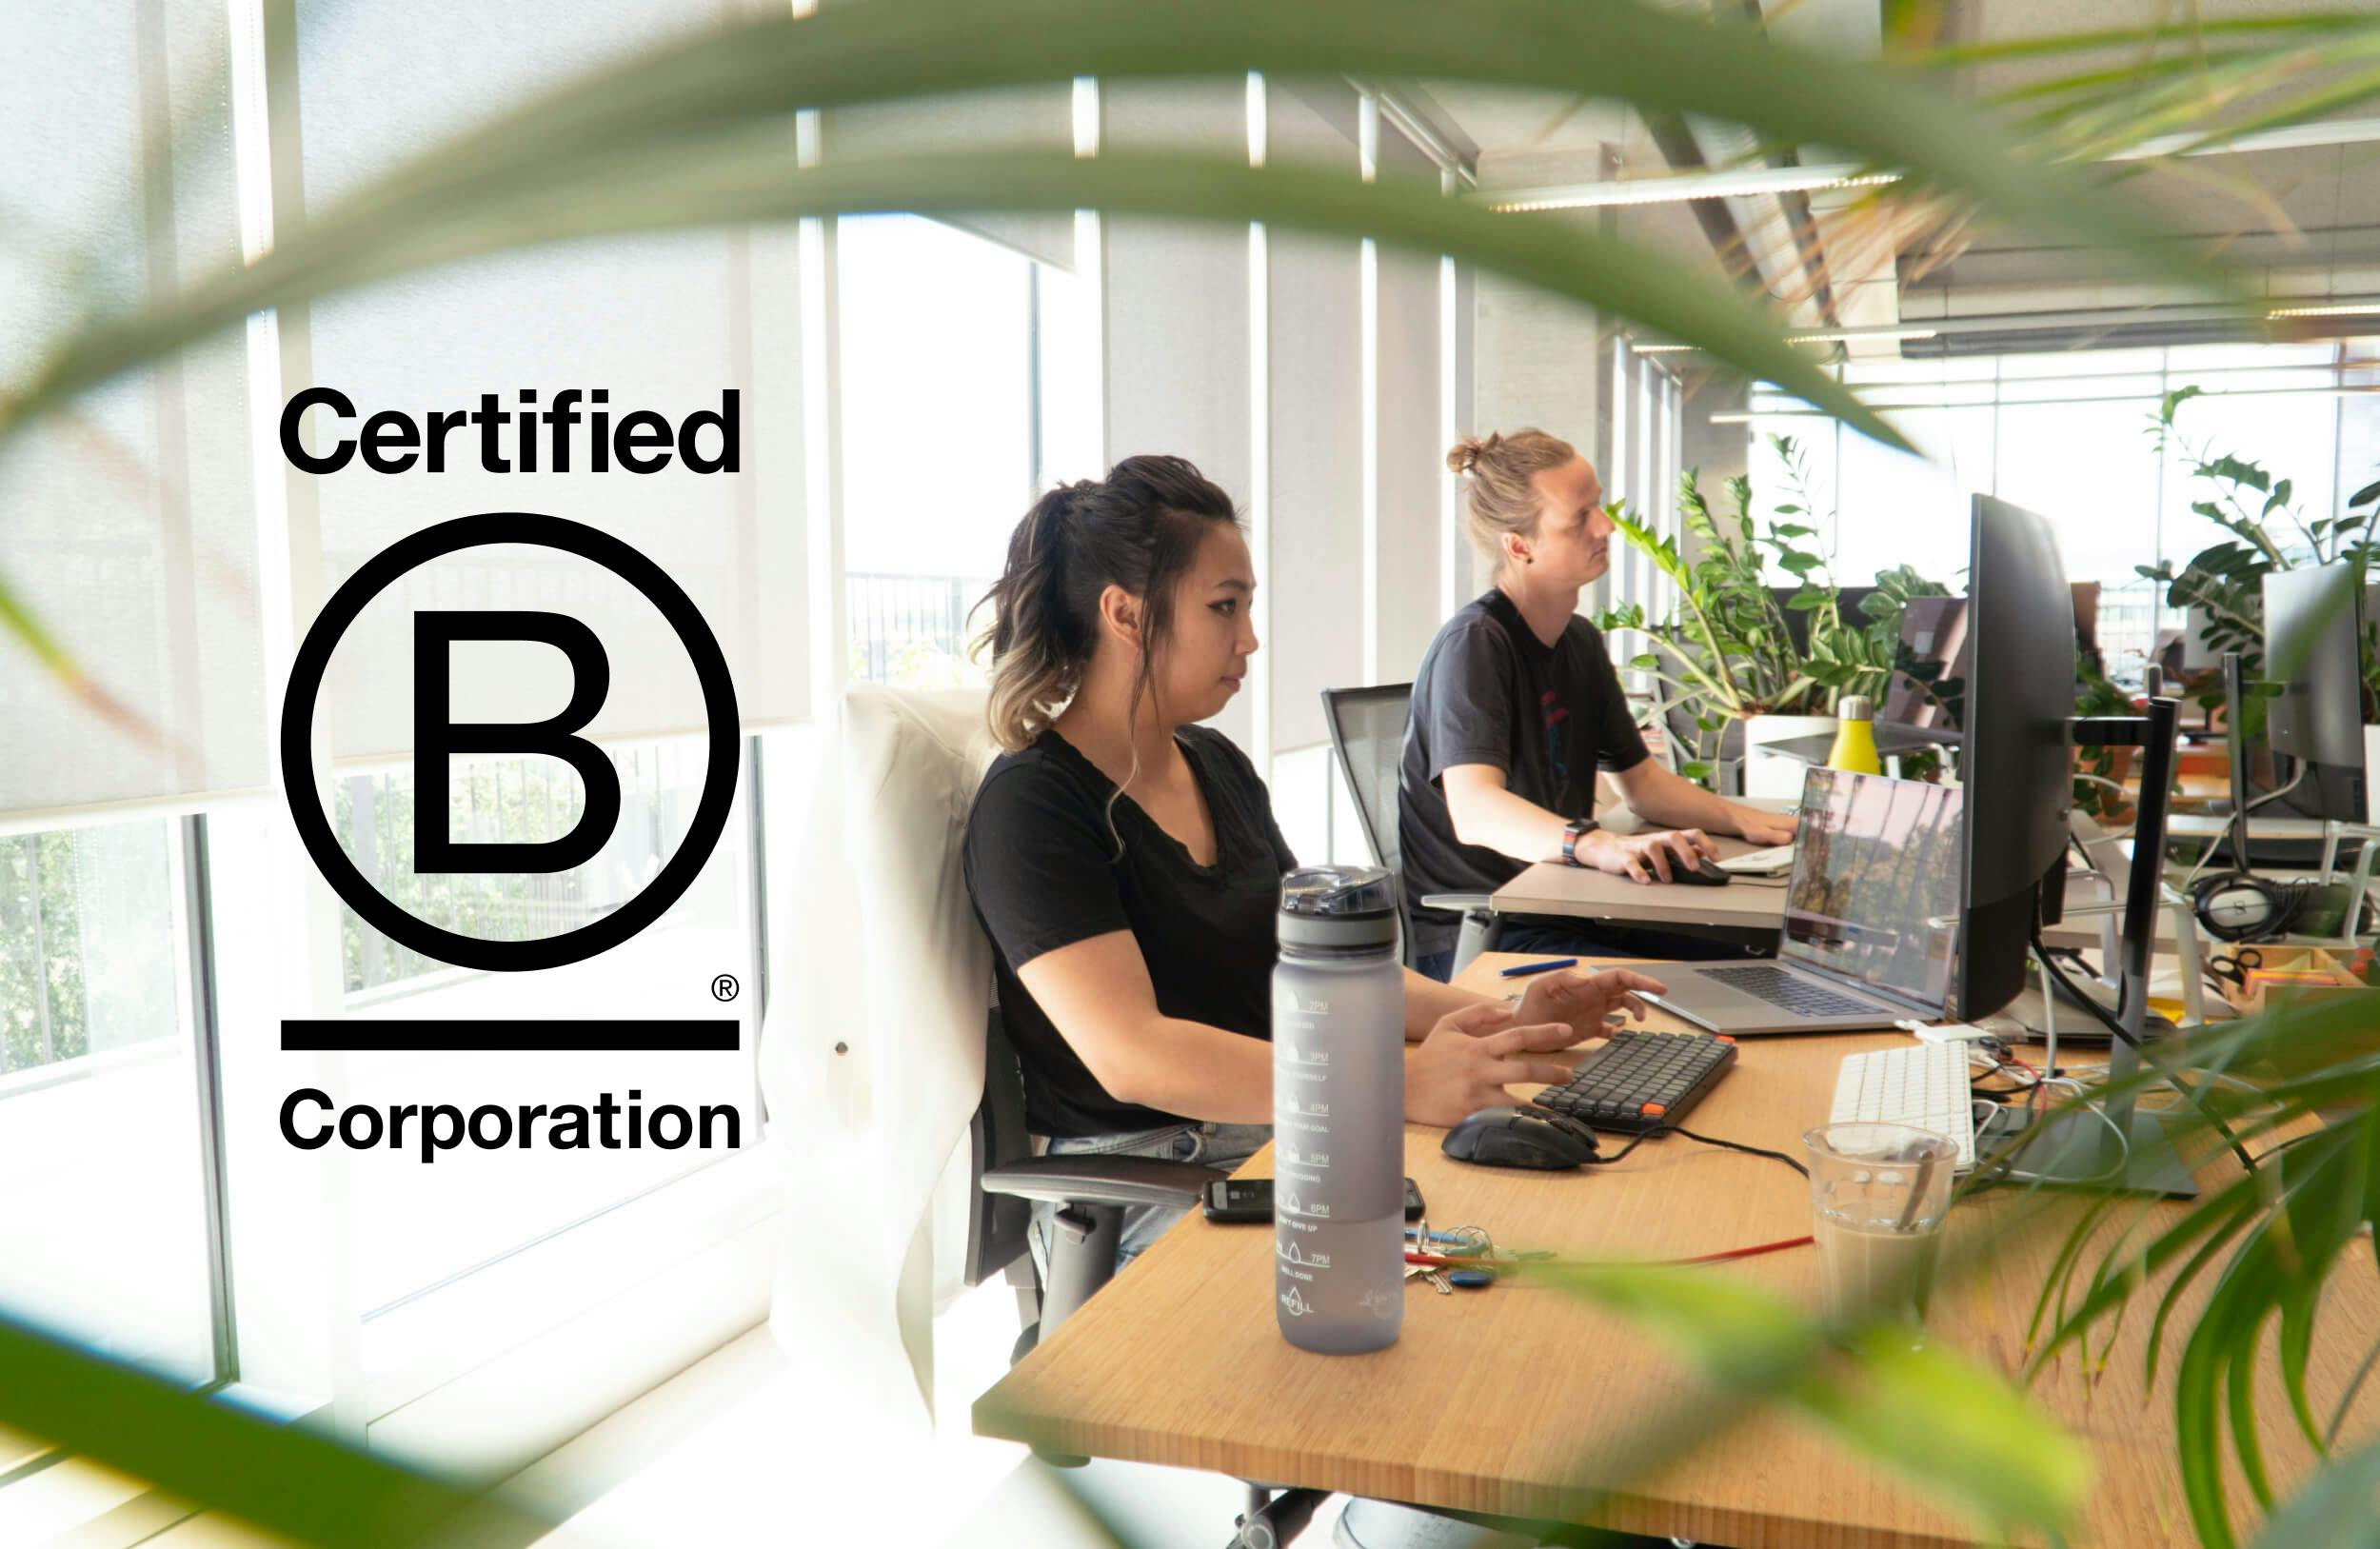 Developers op kantoor bij De Voorhoede. Over de foto is het logo geplaatst van Certified B Corporation